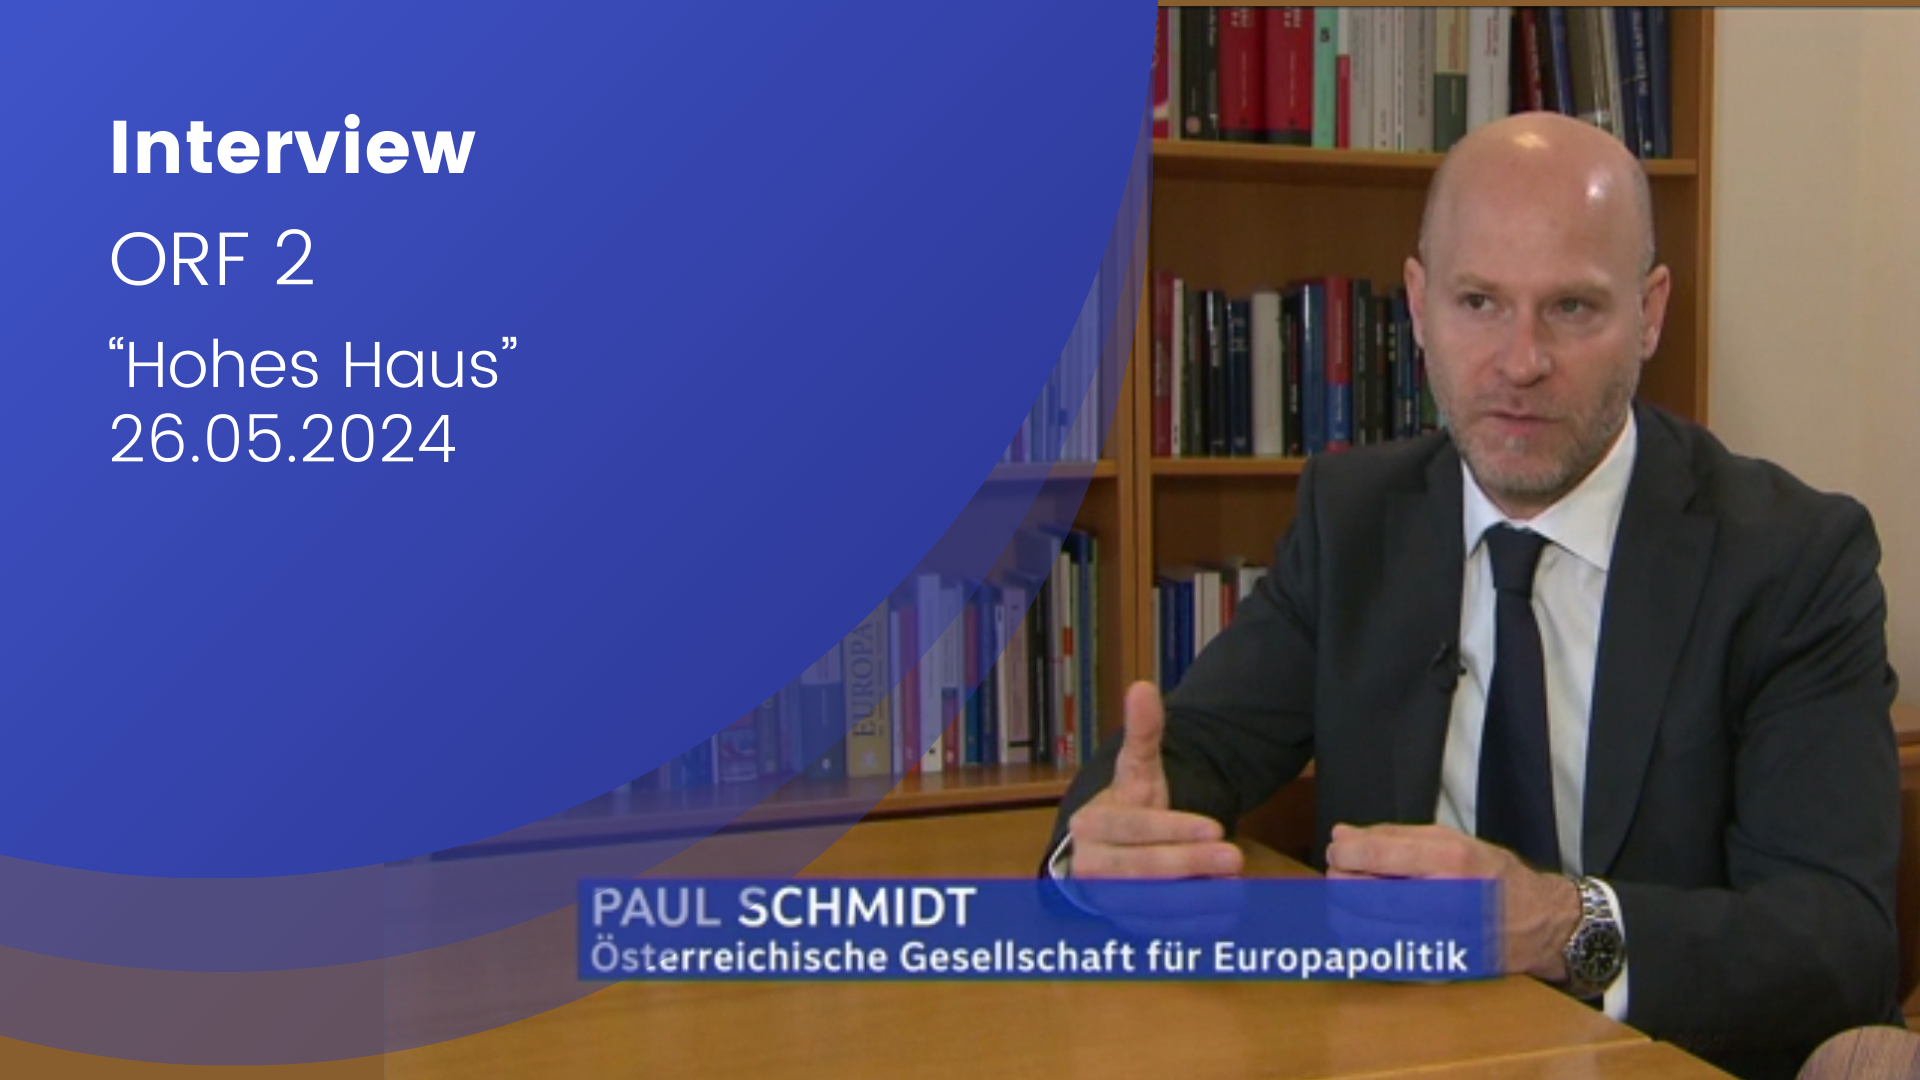 Paul Schmidt ist im Bild zu sehen. Er trägt einen Anzug und erklärt mit Handgesten einen Sachverhalt. EU-Wahl; Prognose; Fakten; EU-Experte;